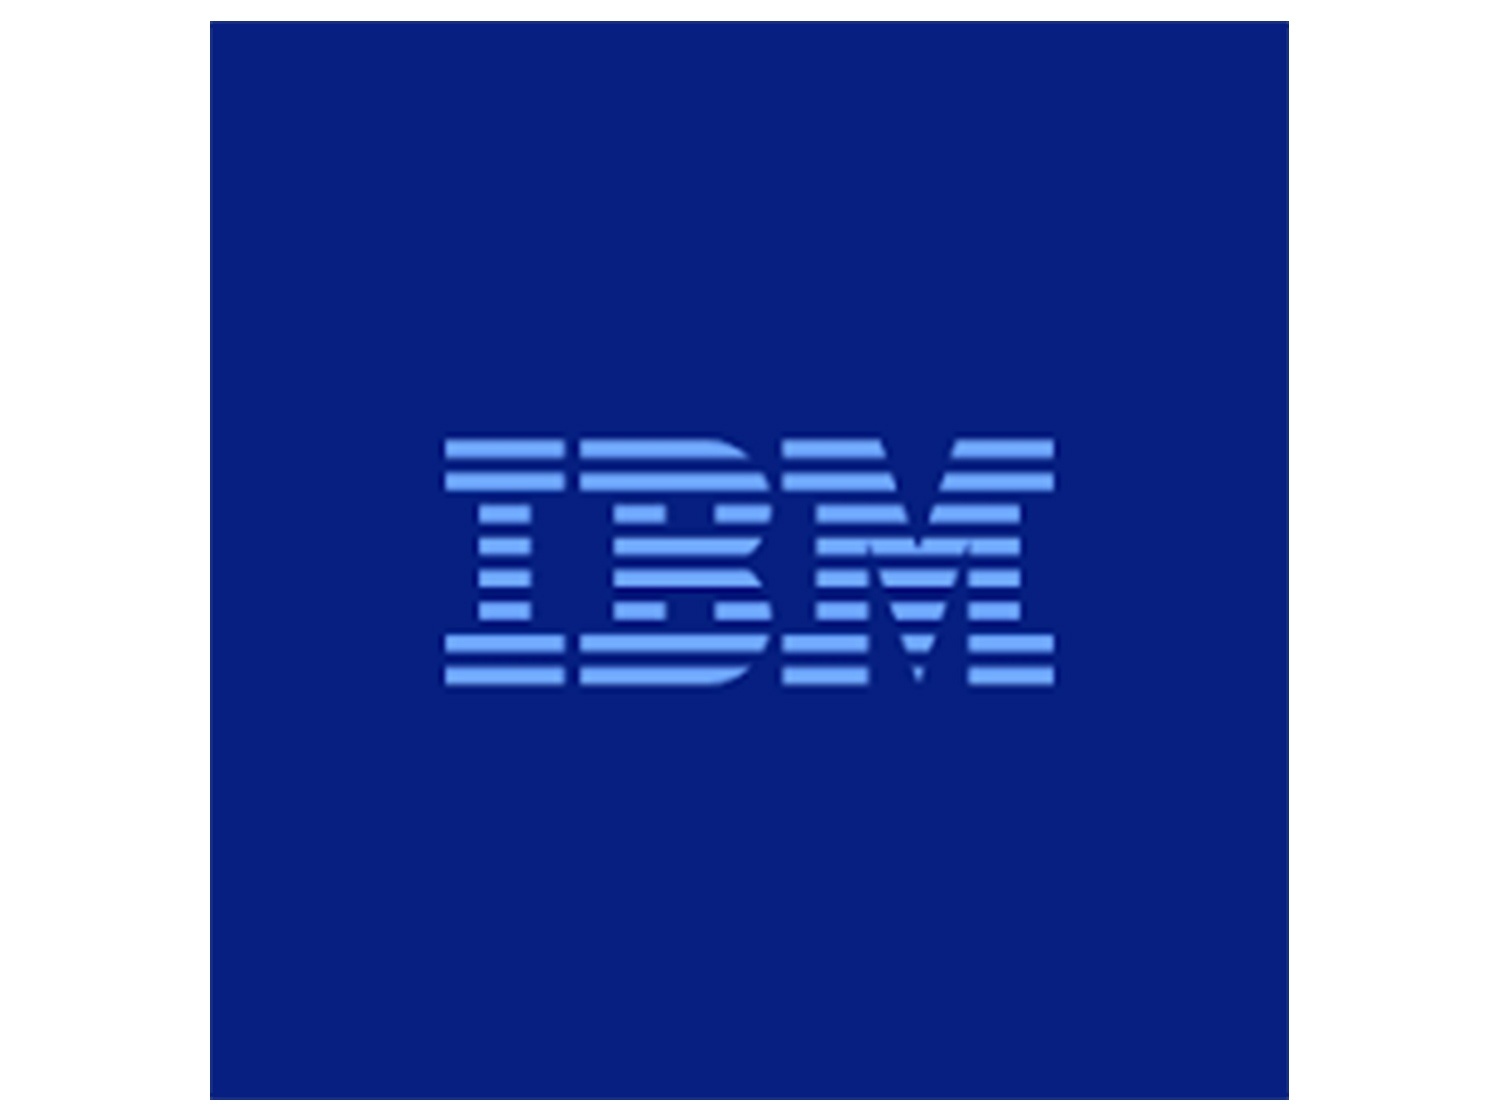 IBM pfm client